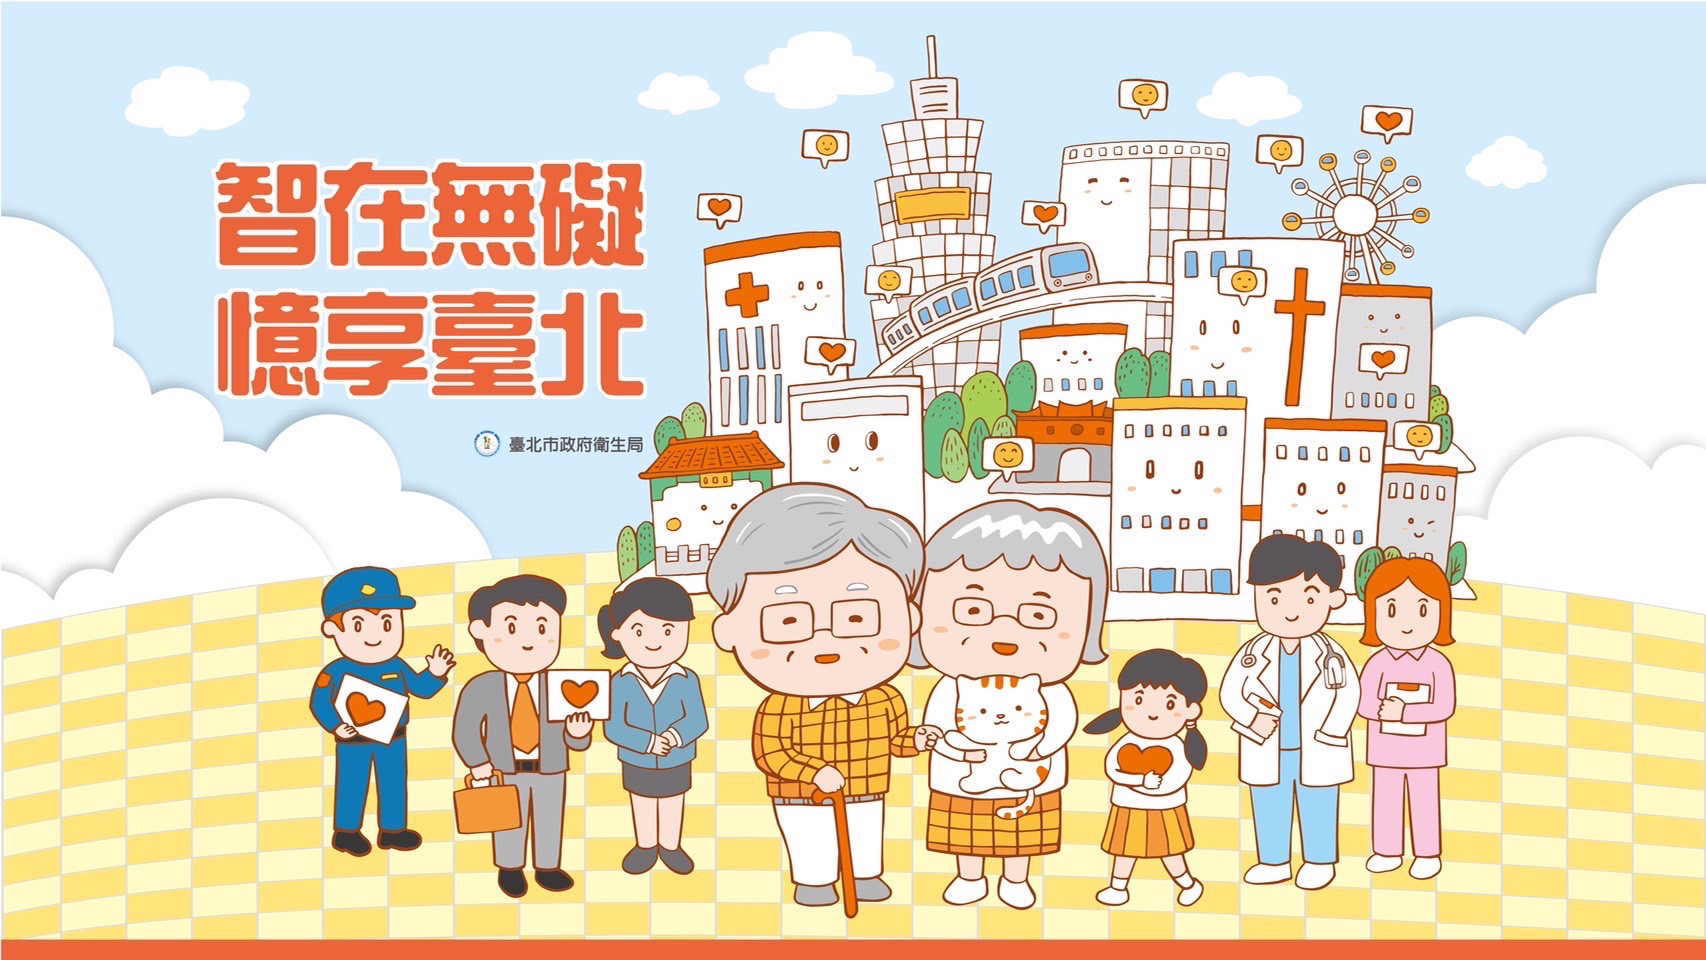 失智照護網遍佈台北  連結社區建構友善環境